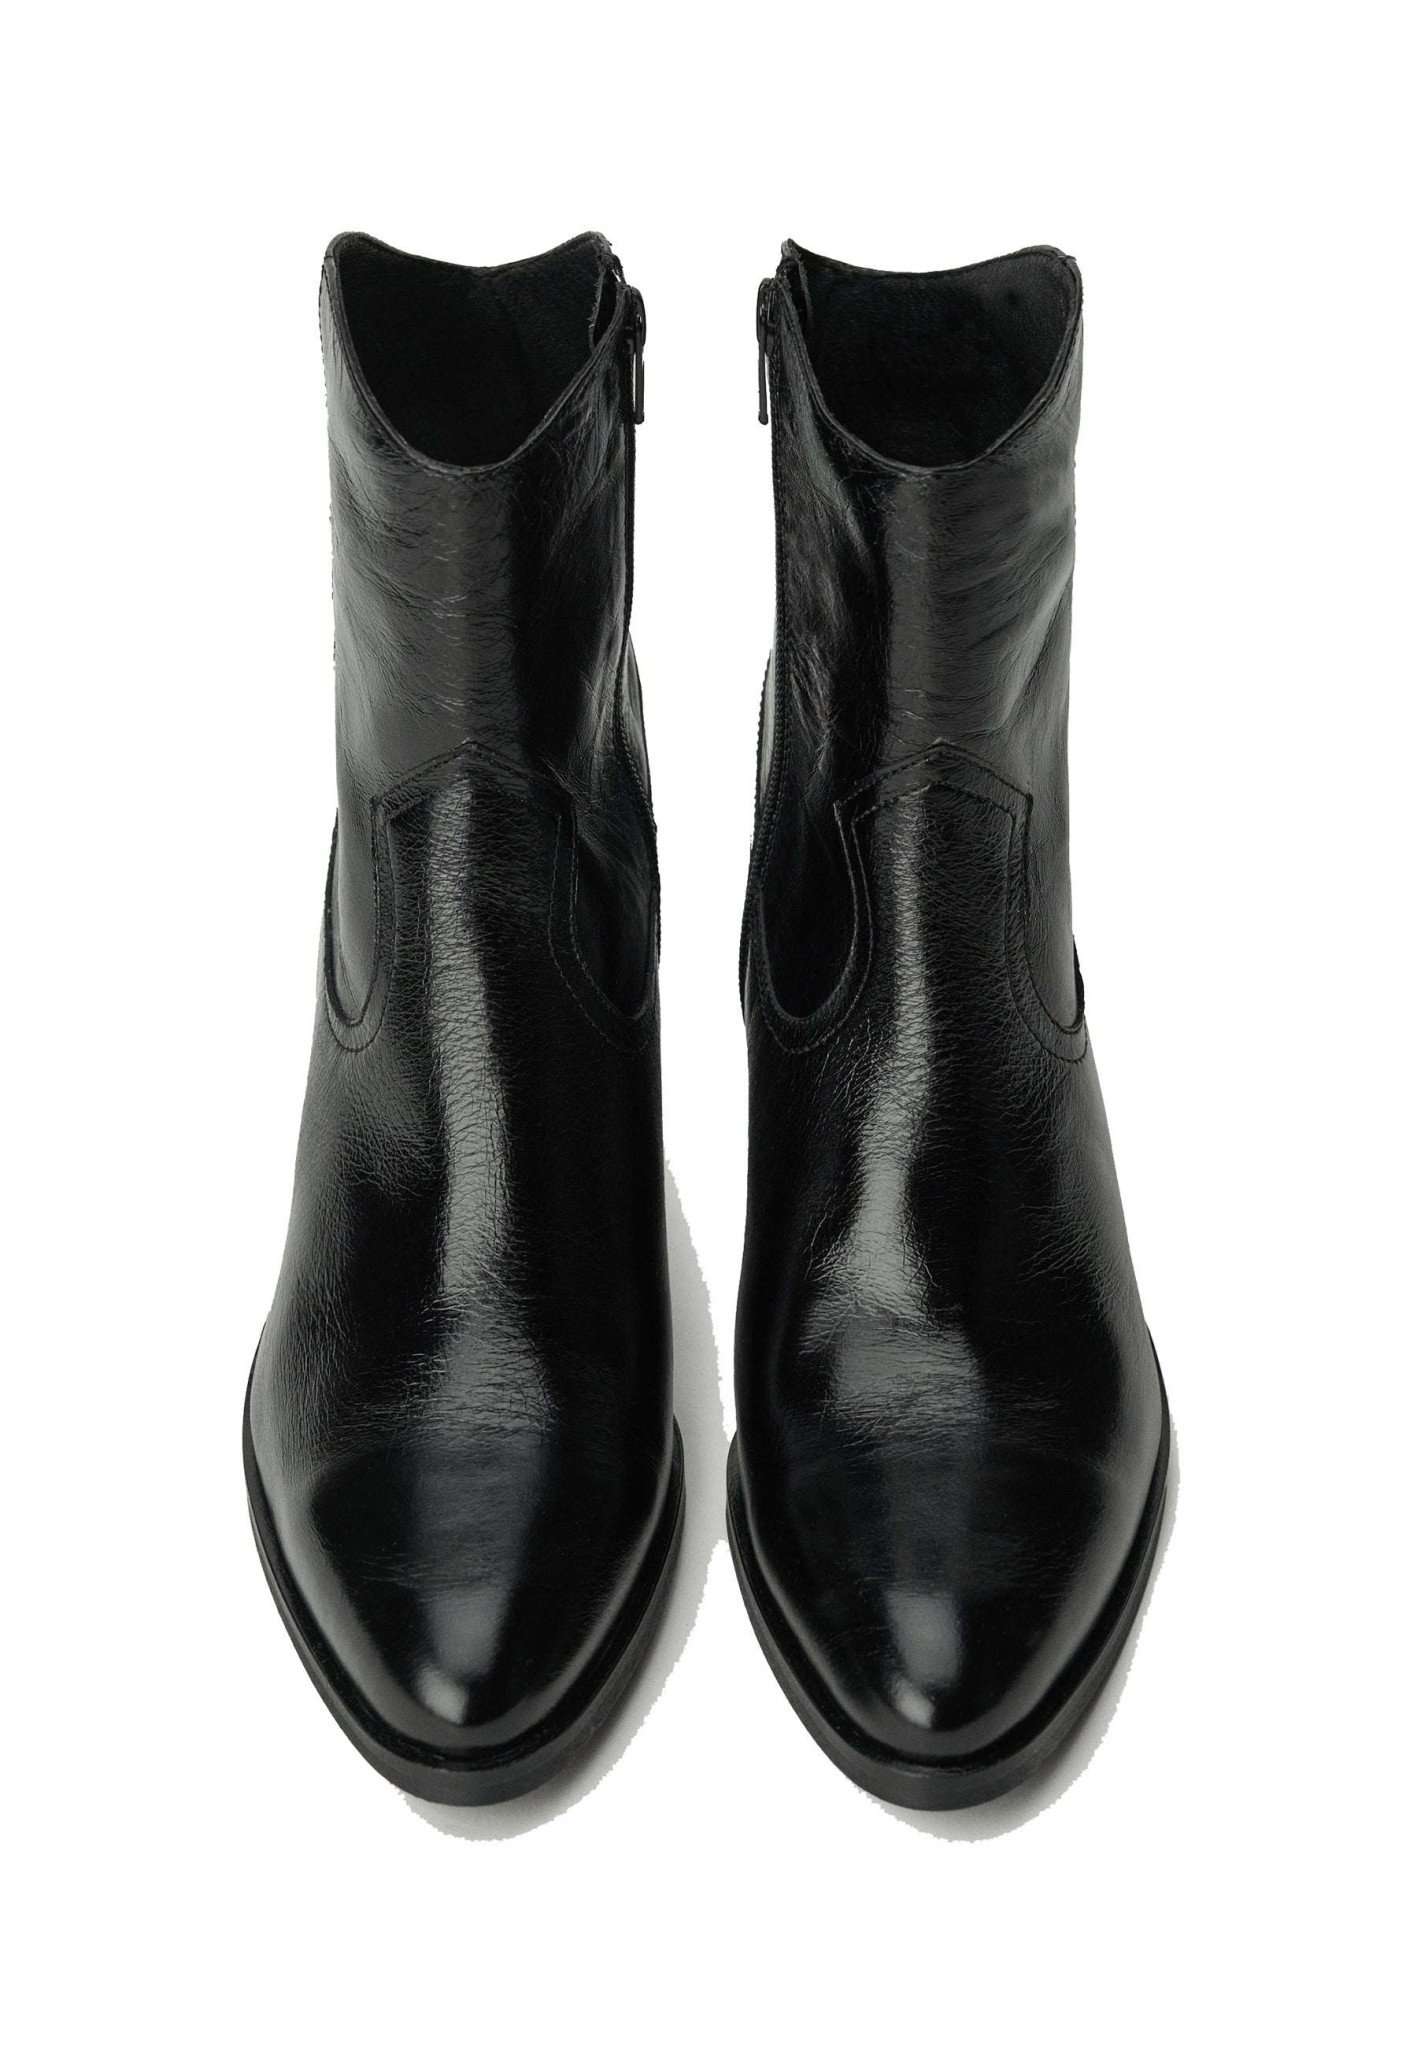 Premium Cowboy Boots in Black Stiefeletten Salsa Jeans   